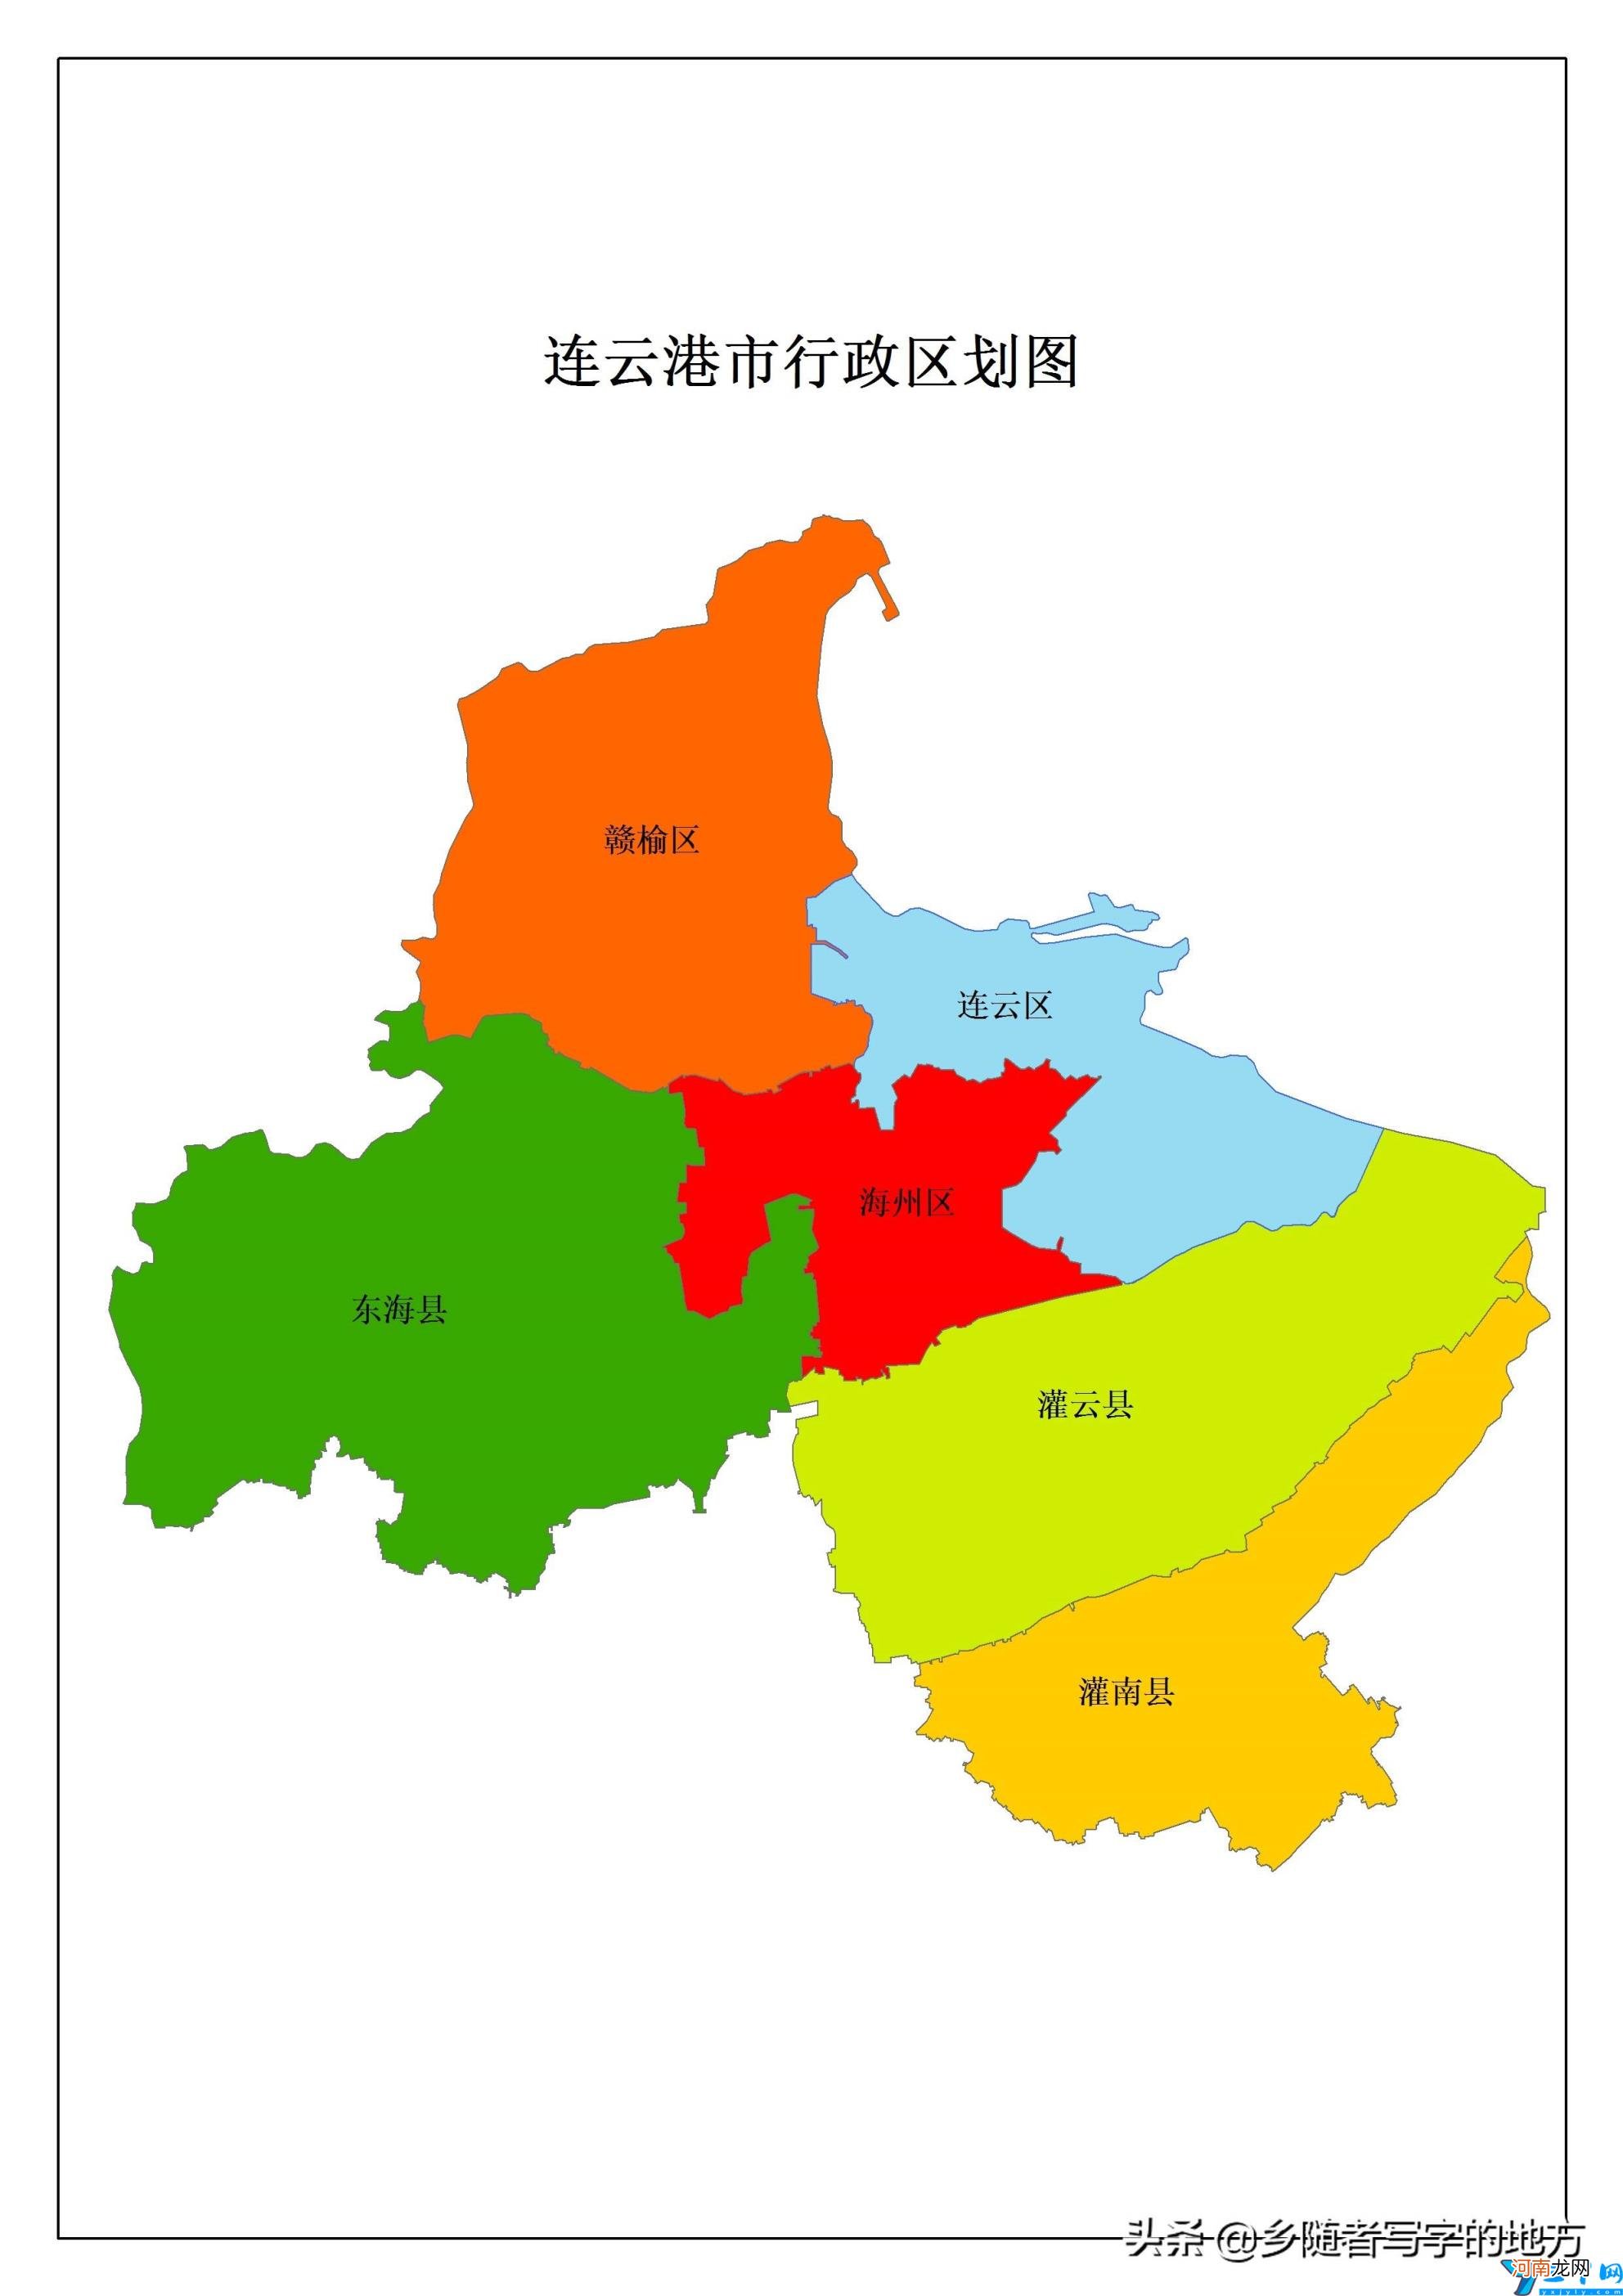 各市的由来 江苏有几个市